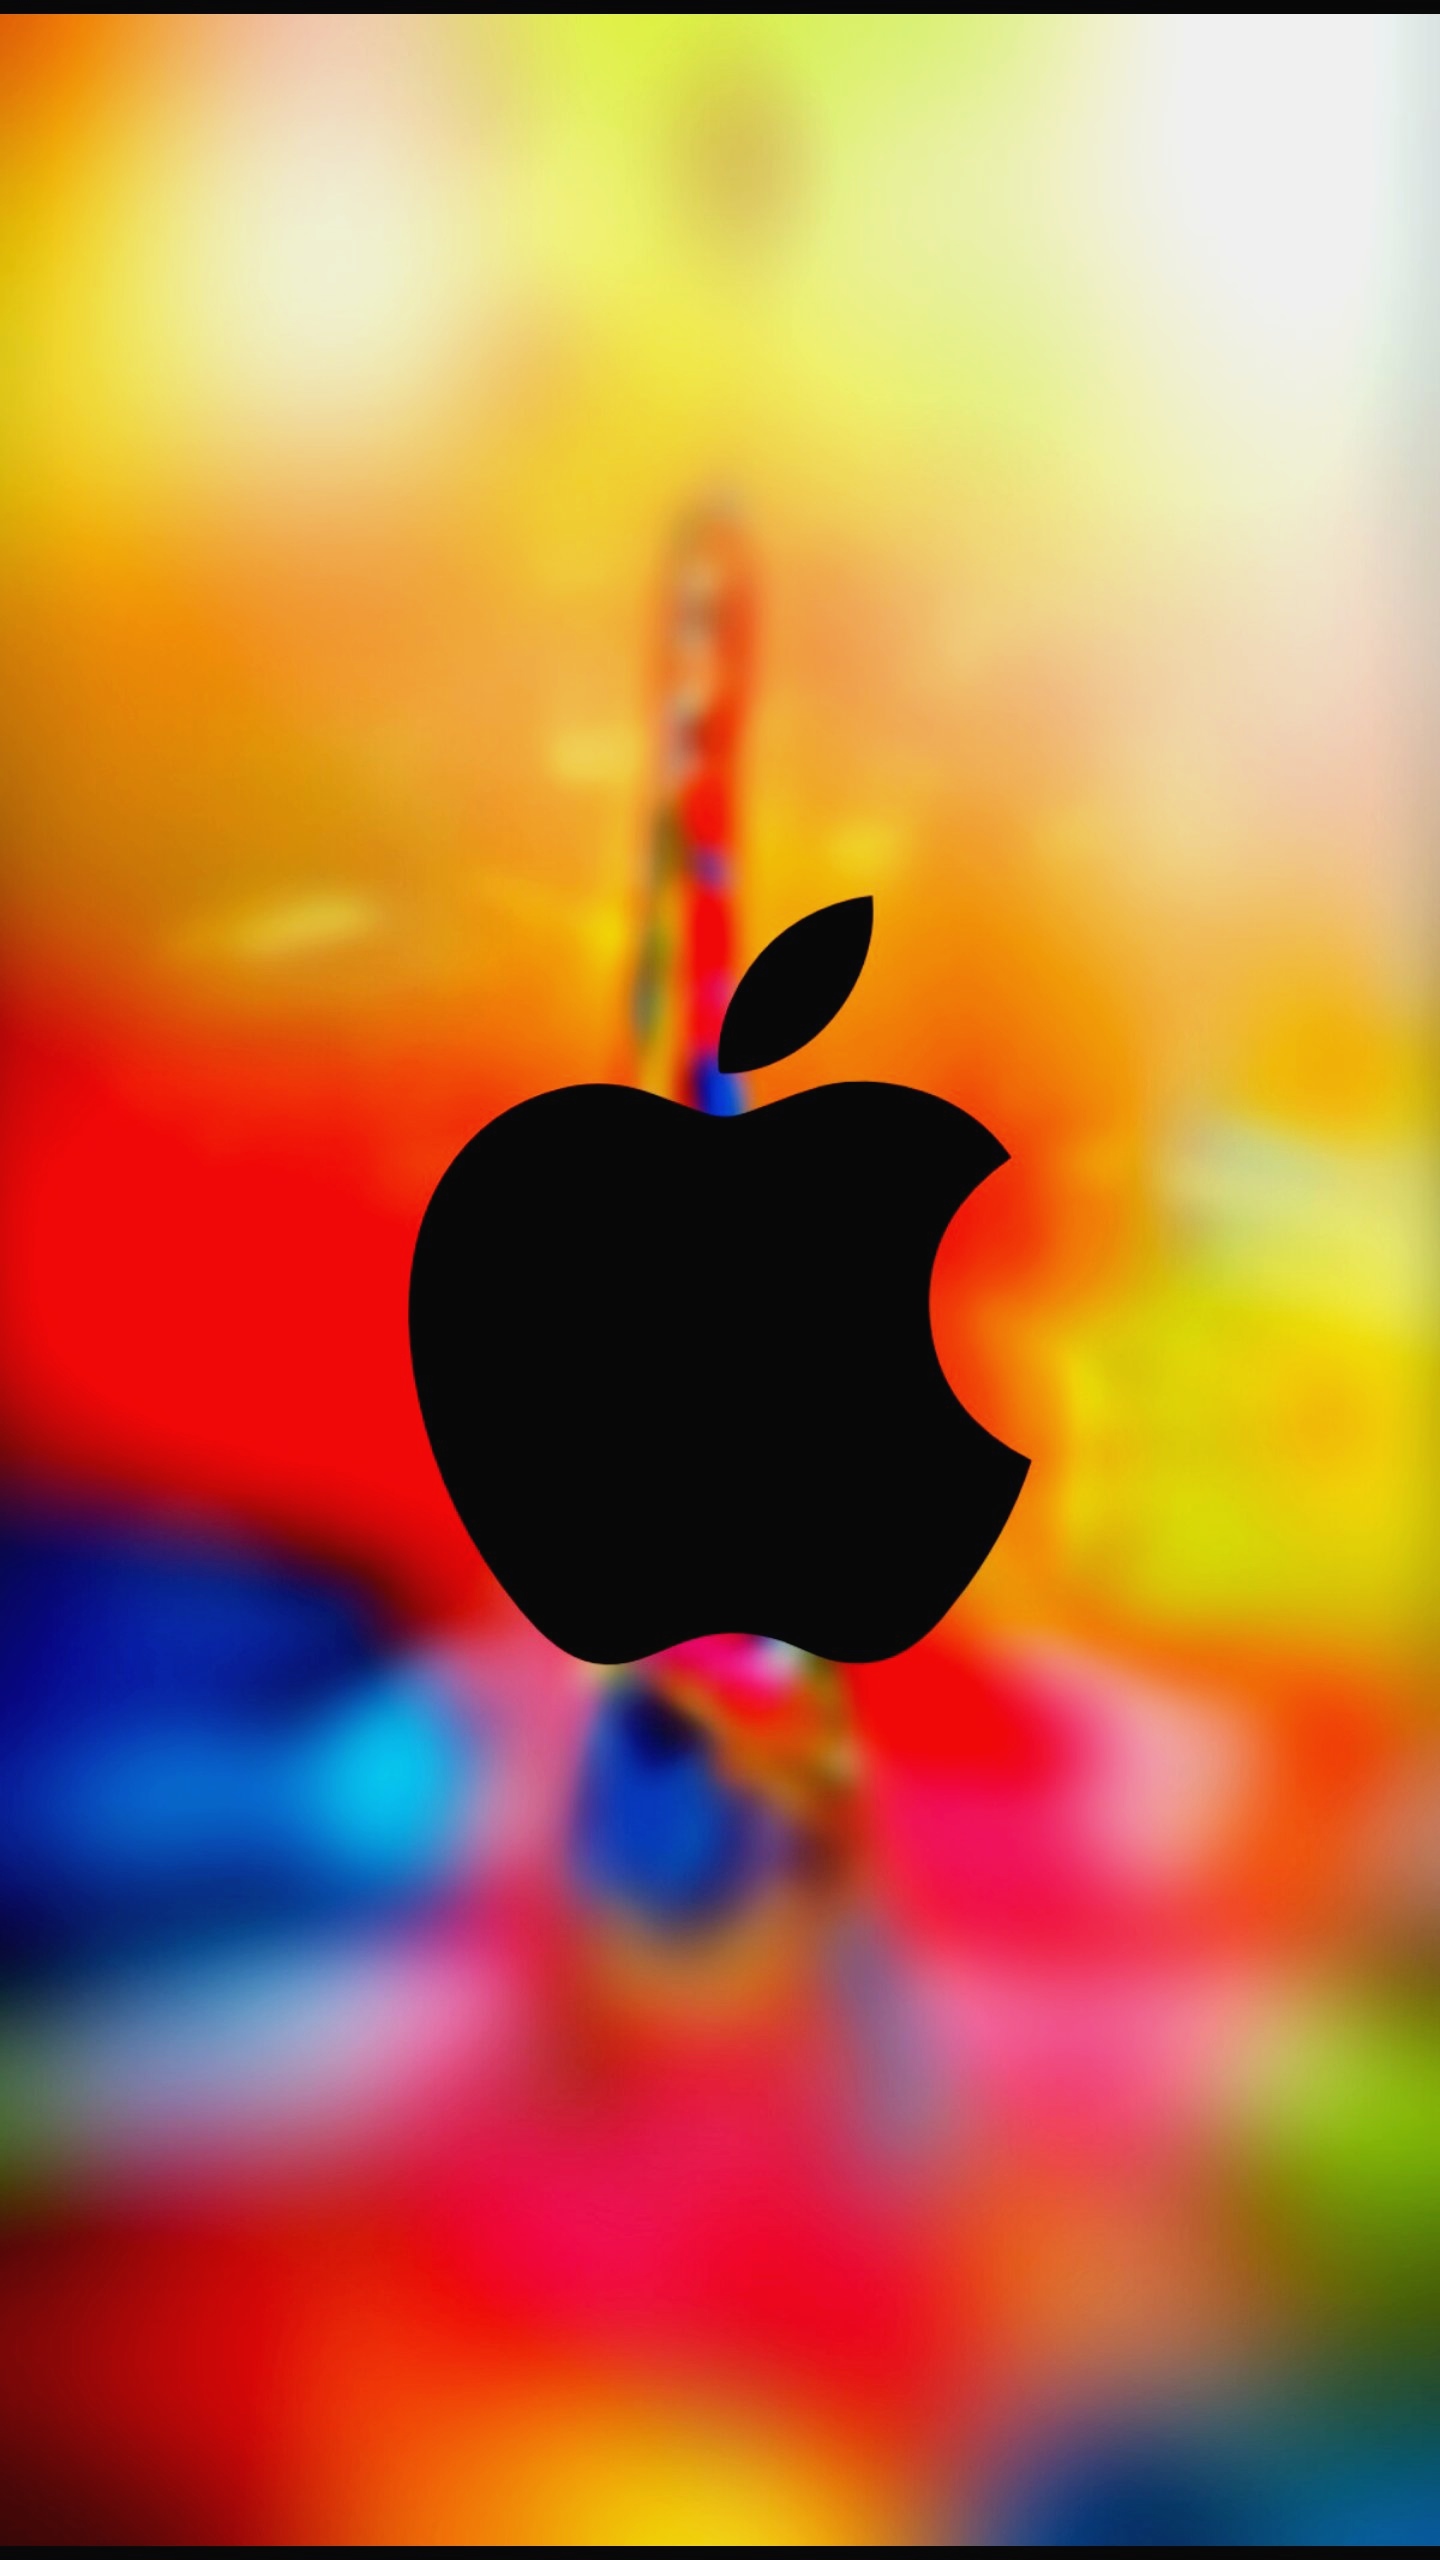 4k Apple Logo Wallpaper Hd By Ik Razu Pradhan - Fondos De Pantalla Hd ...